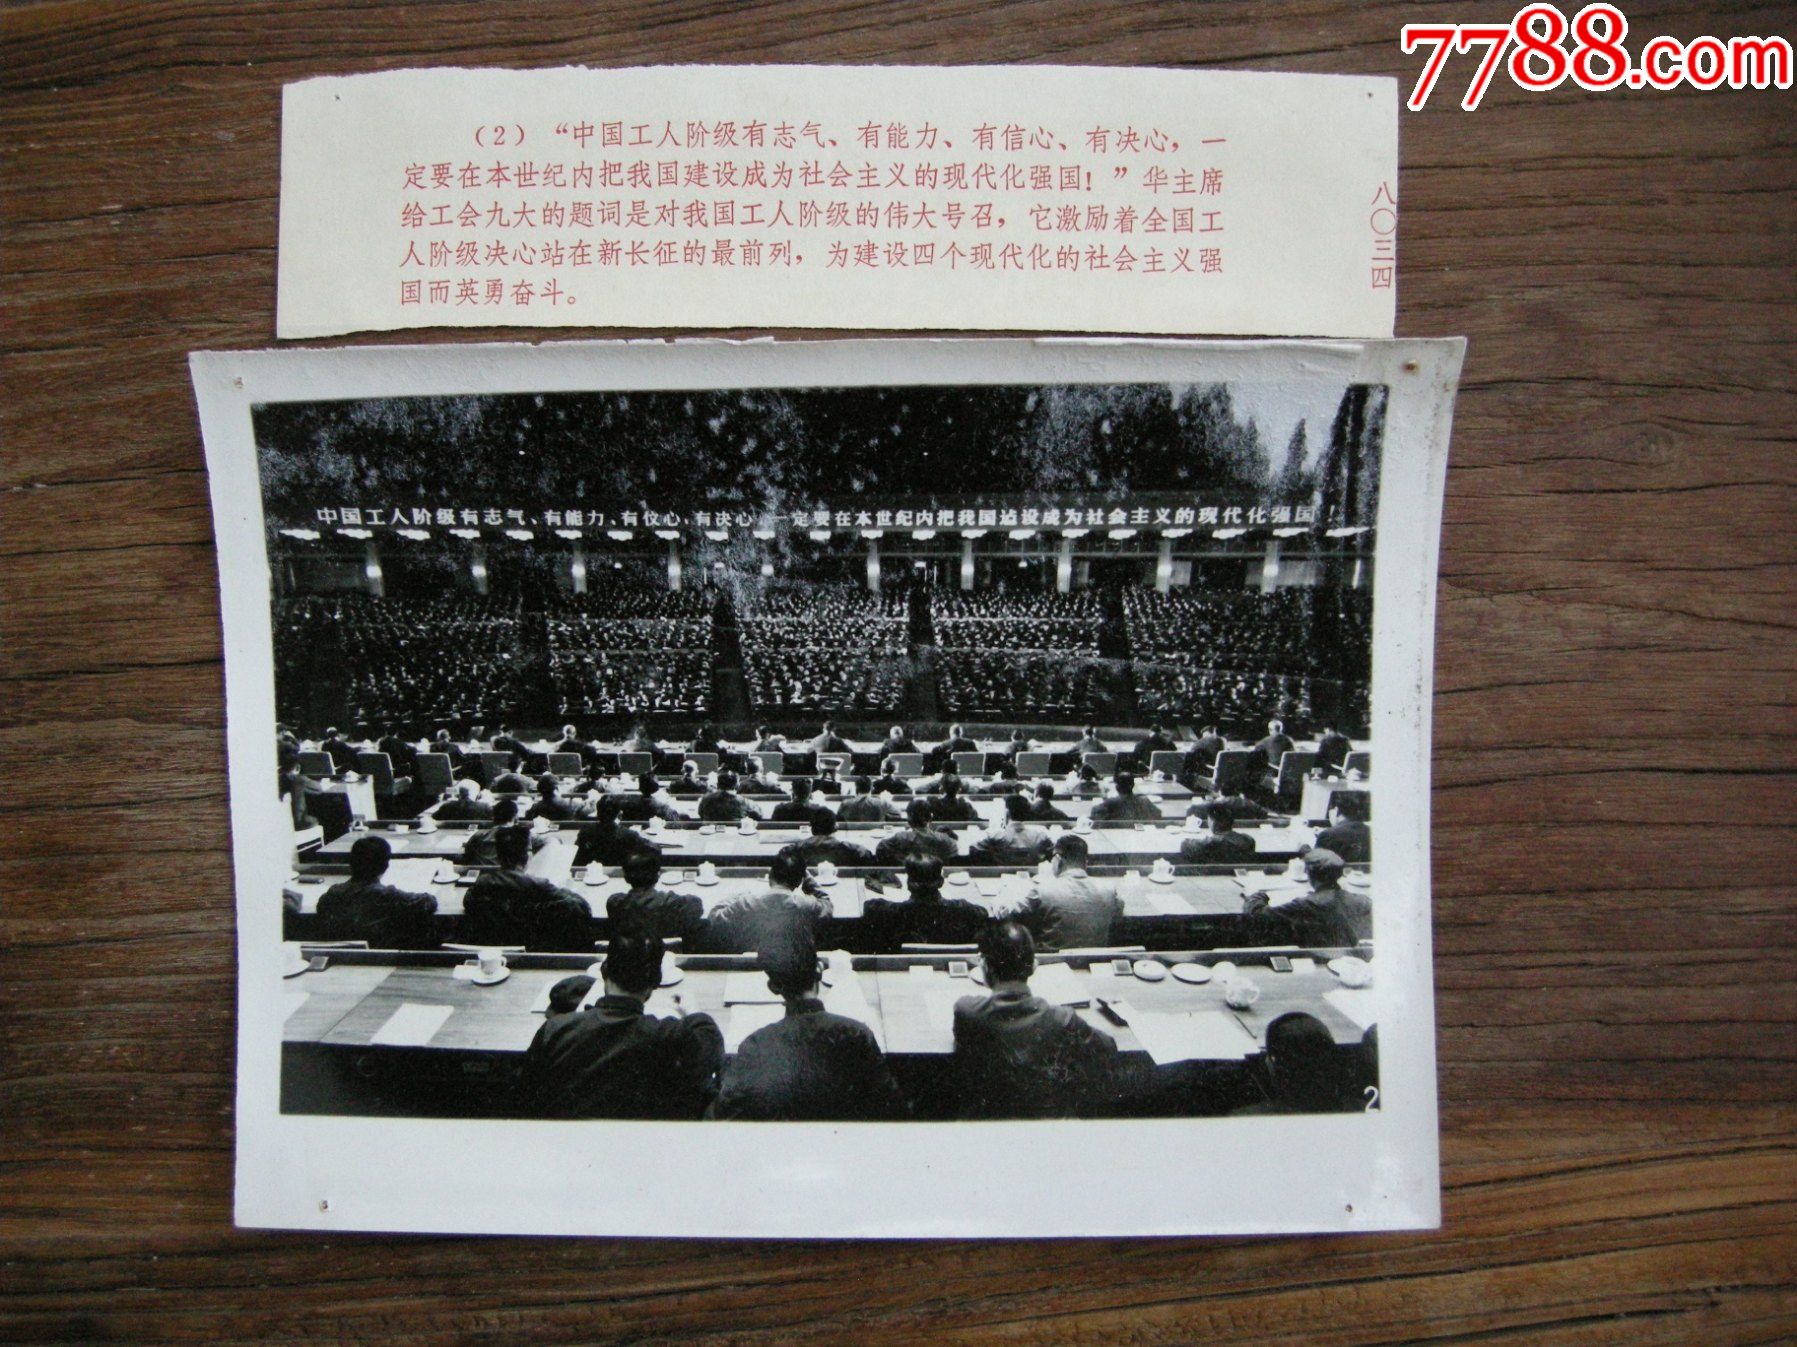 1978年,中国工会第九次全国代表大会,大会会场全景